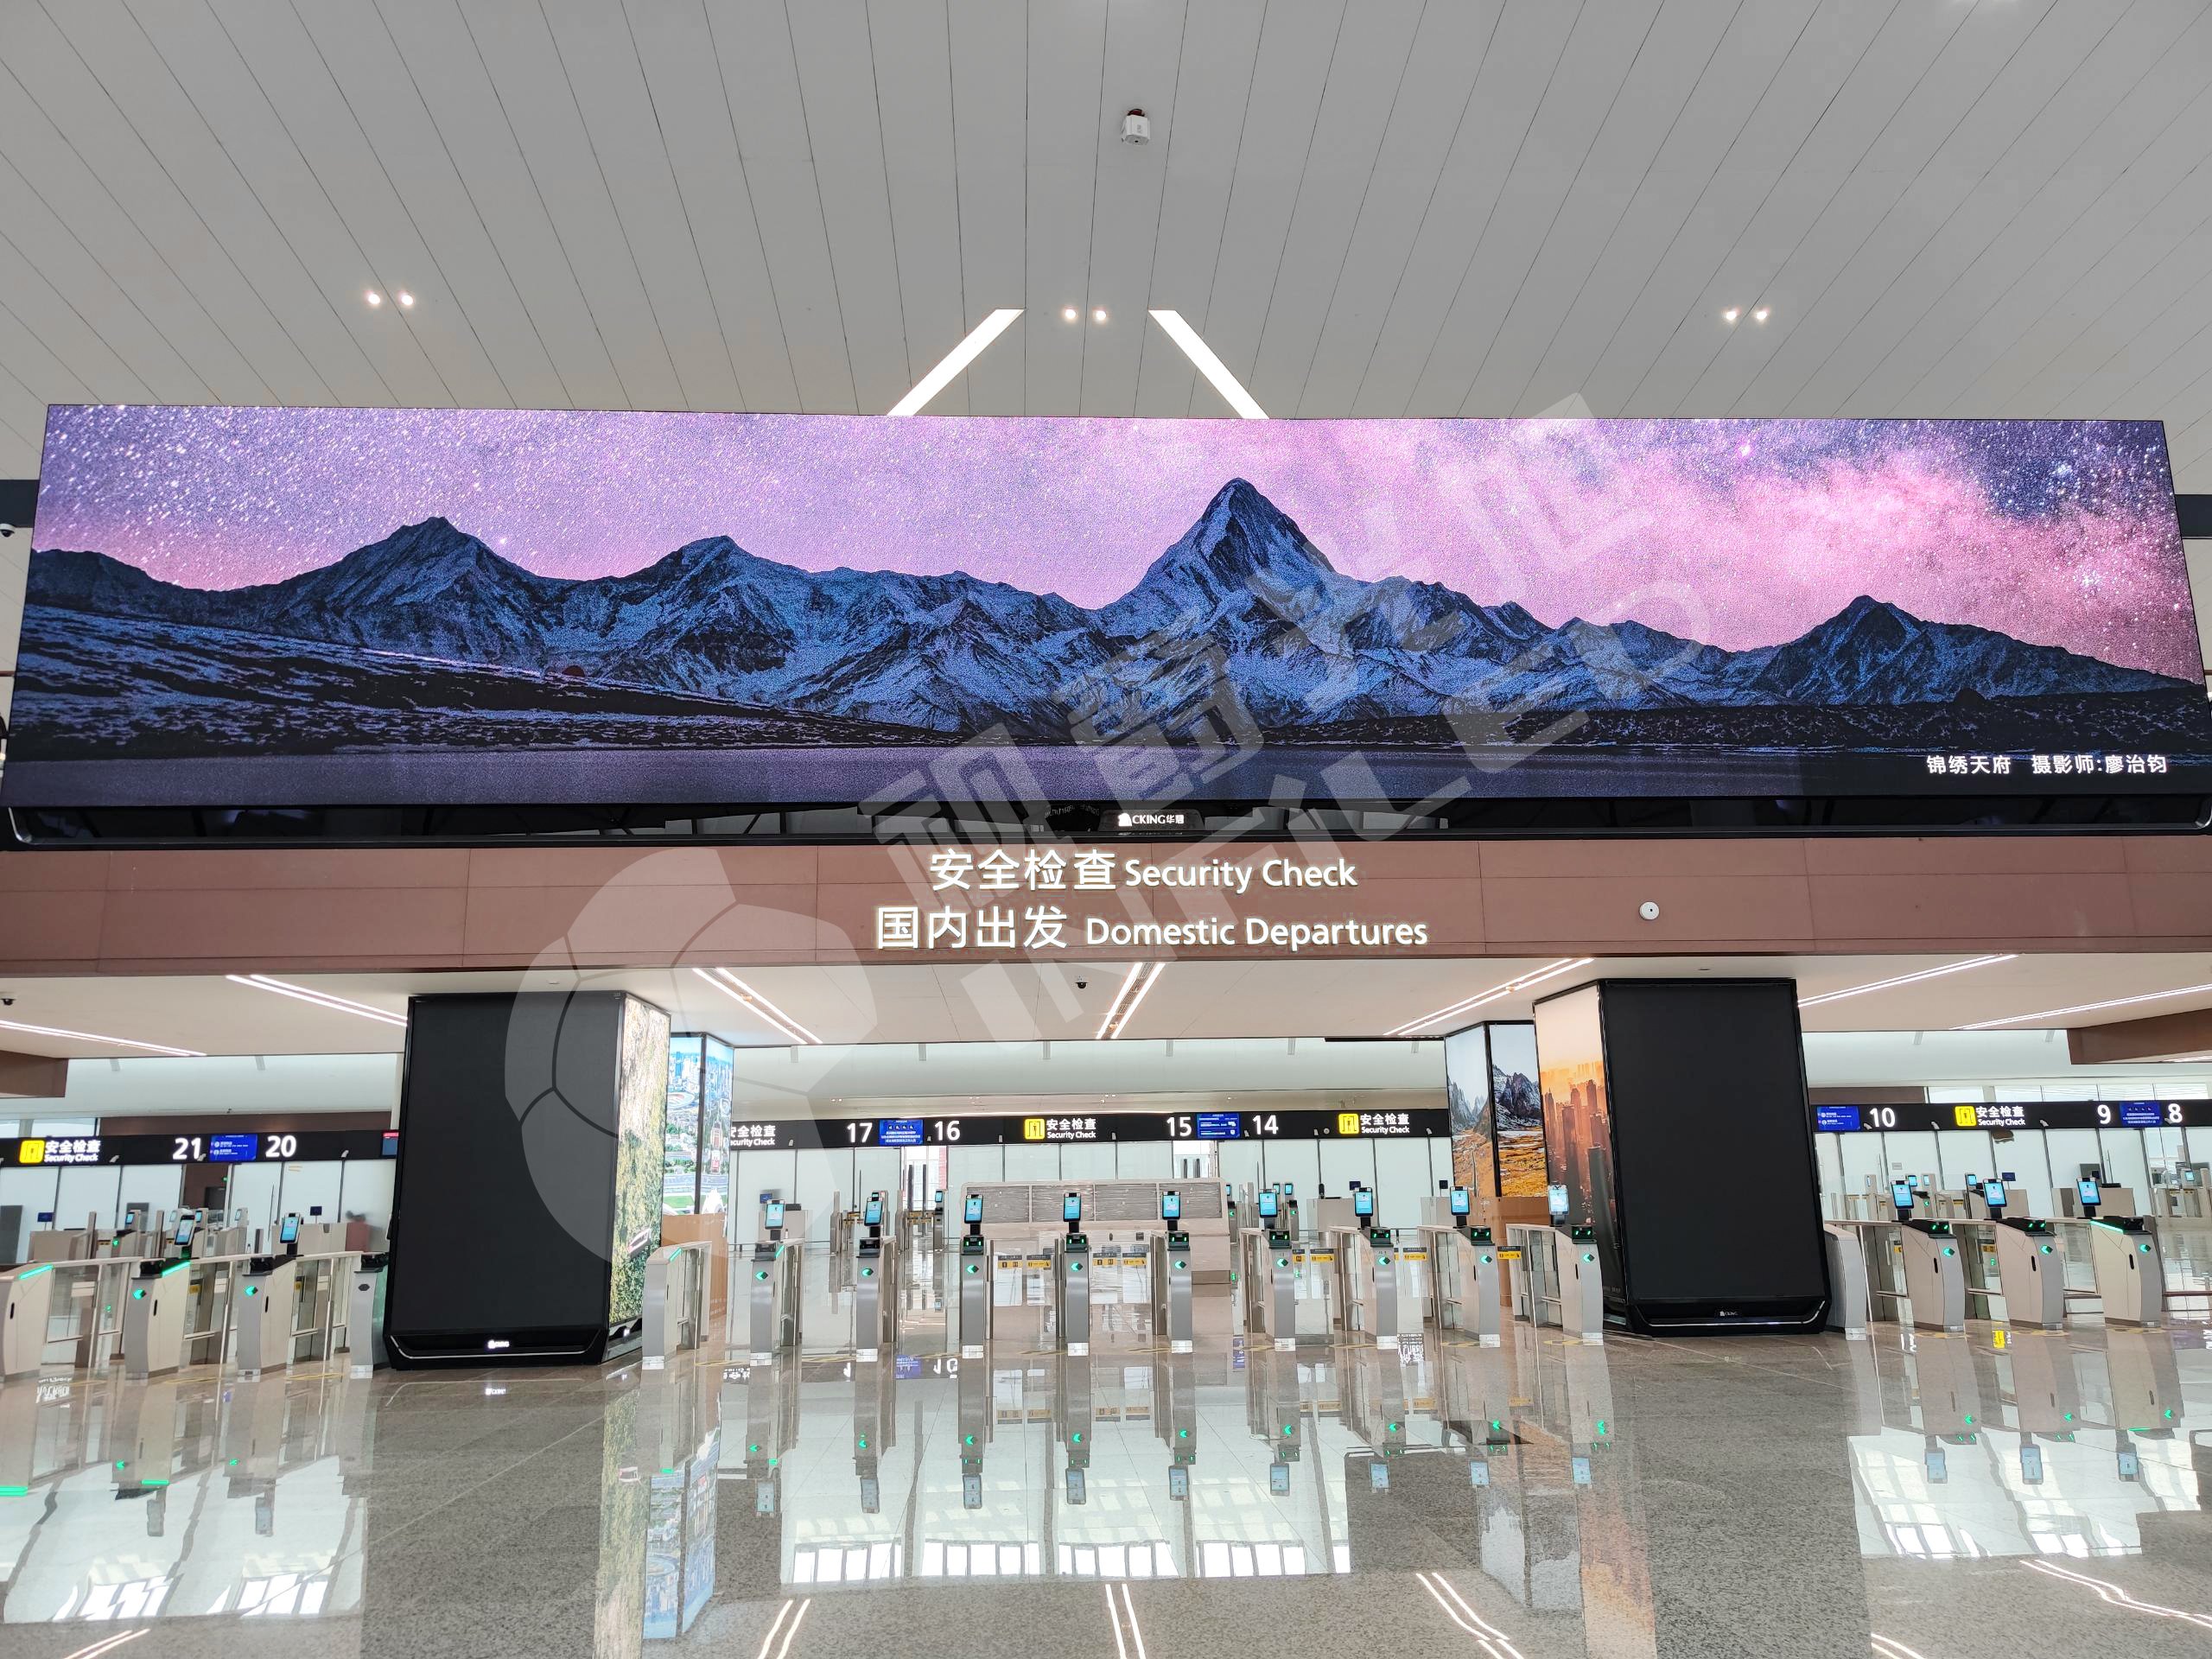 视爵光旭领秀系列LED大屏助力成都天府国际机场数字化运营